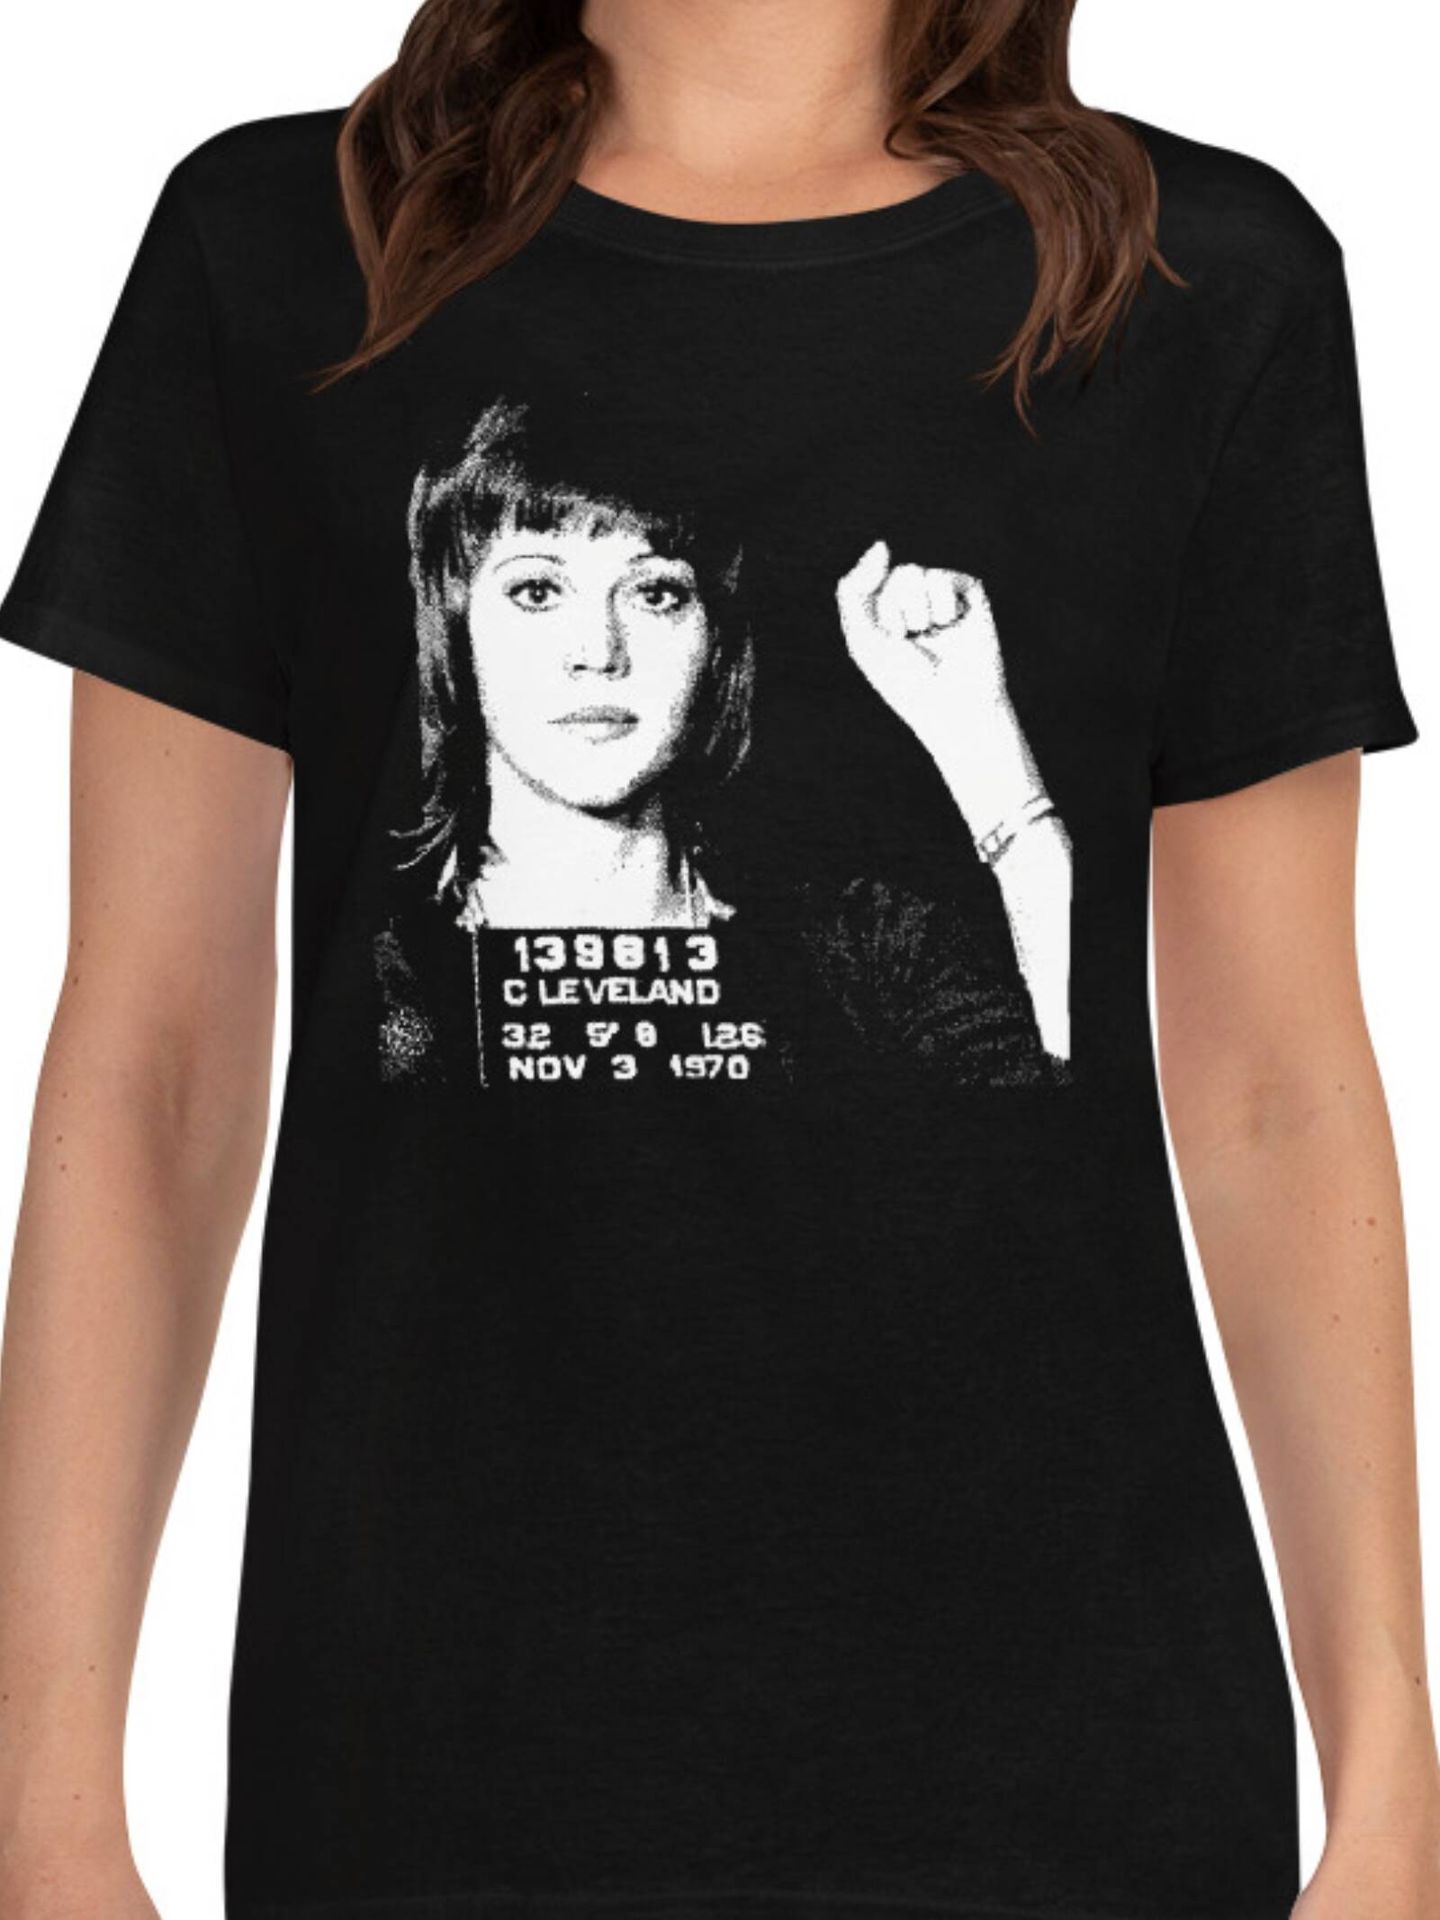 Una de las prendas que vende Jane Fonda en su tienda online, con su ficha policial. (Cortesía)